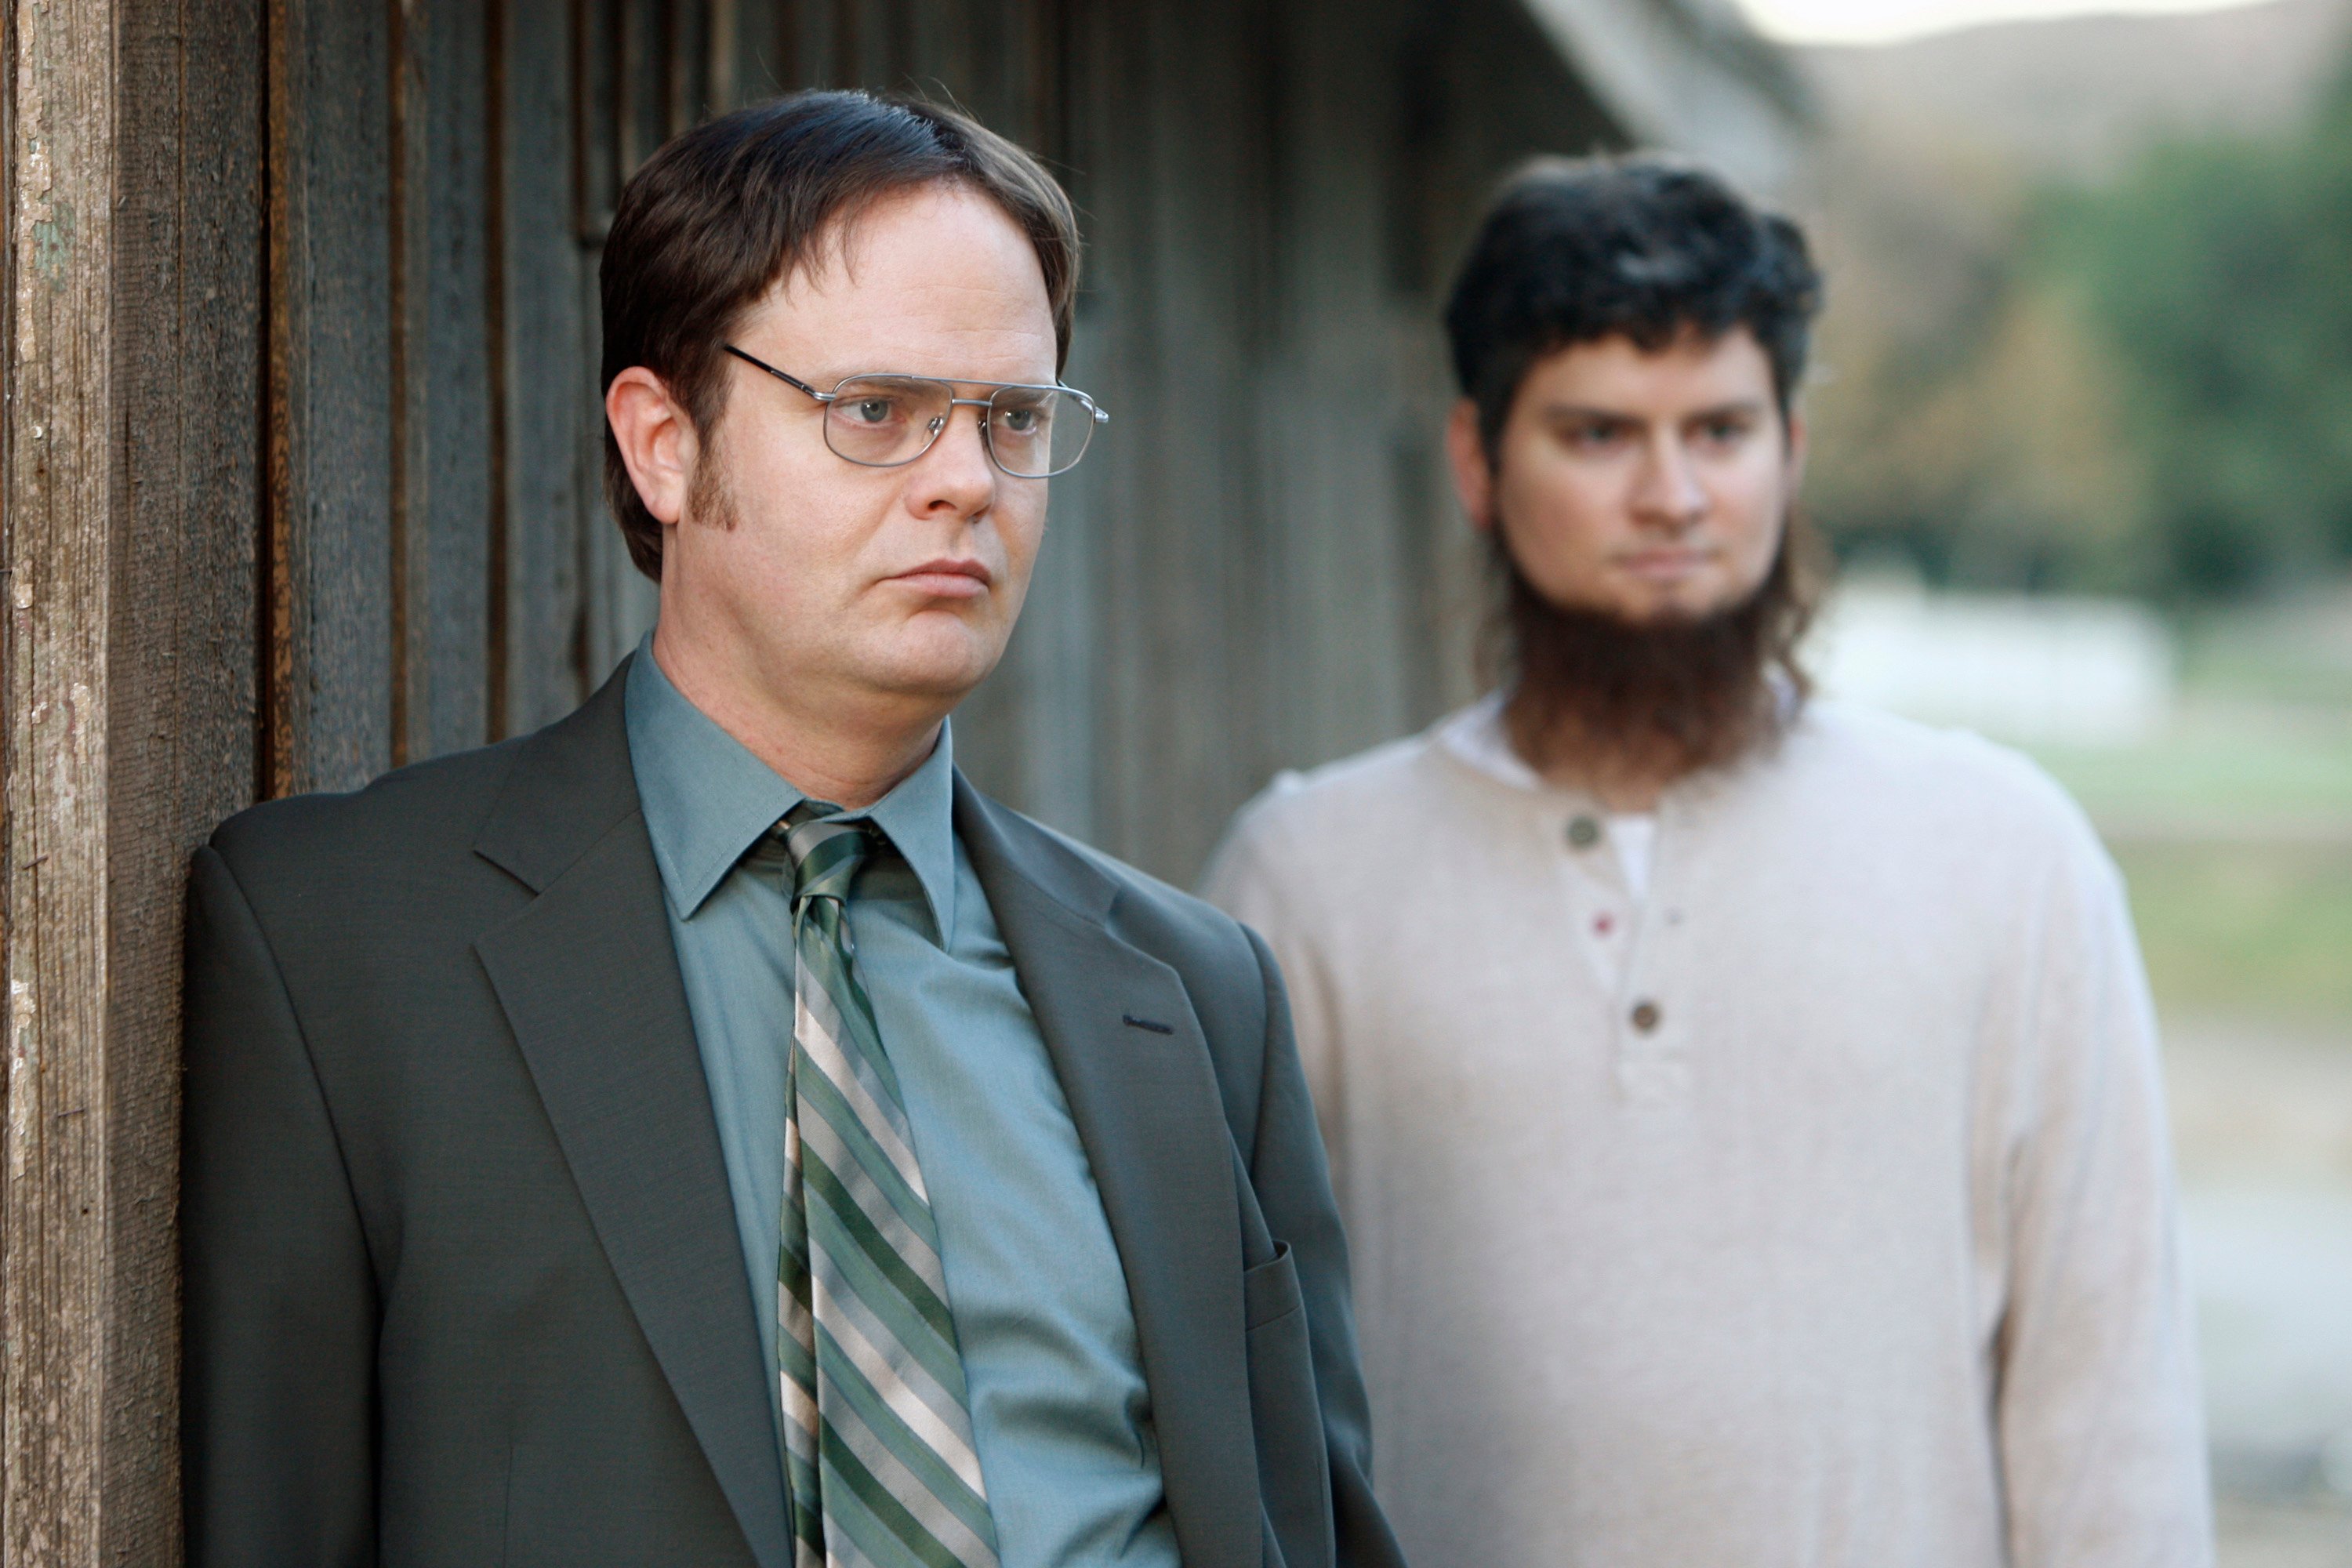 Rainn Wilson as Dwight Schrute, Michael Schur as Mose on 'The Office'